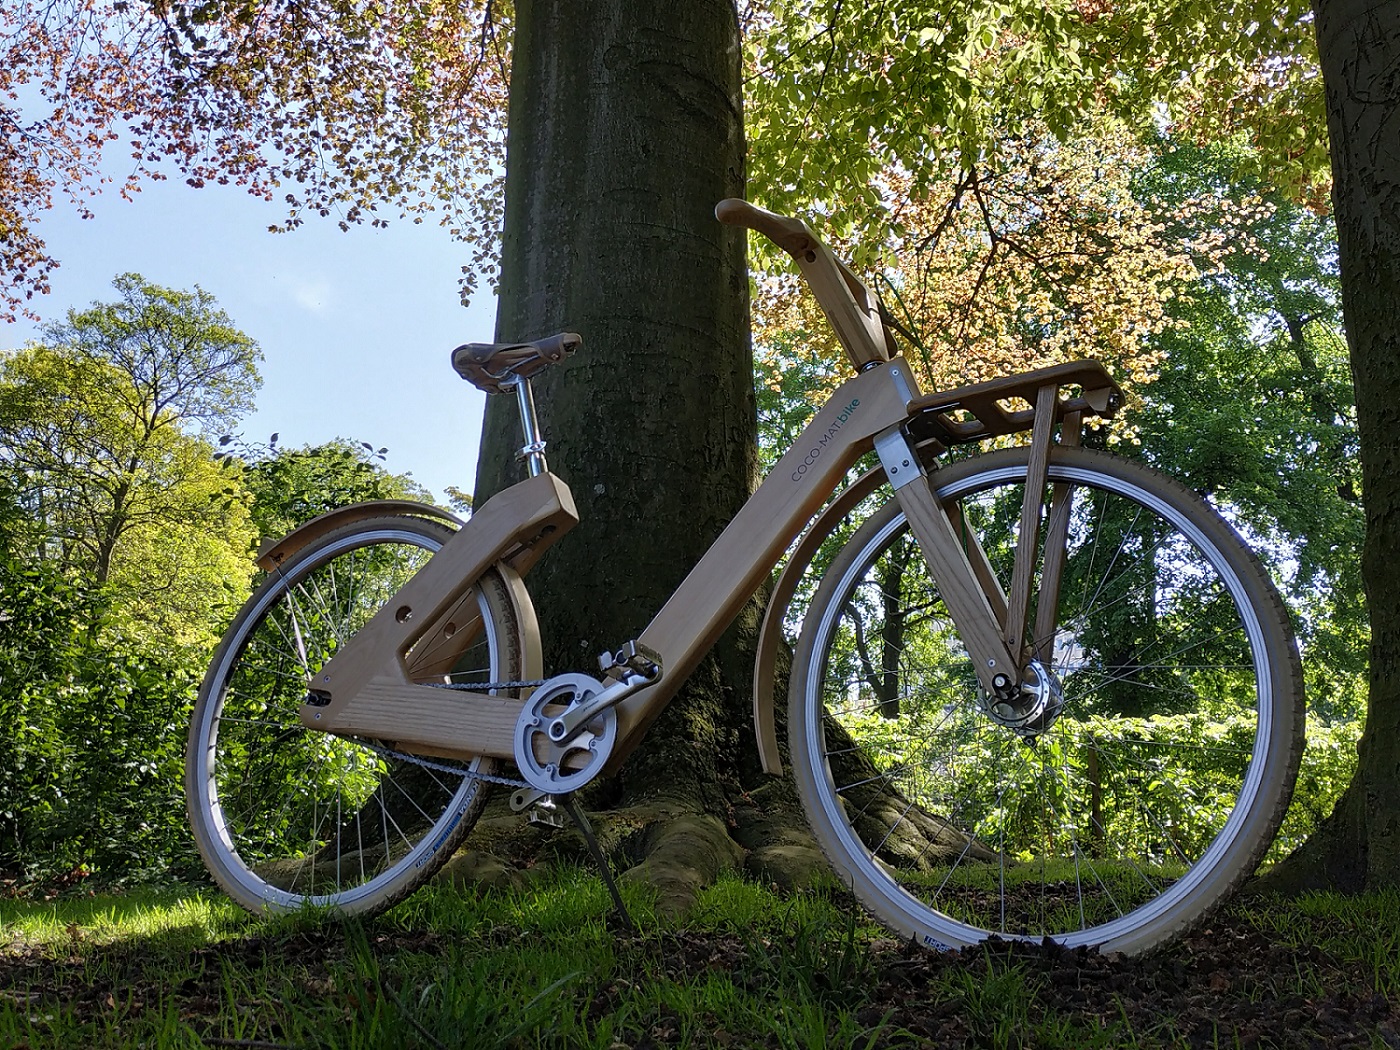 Antwerpen Eco-Tour auf Holzfahrrädern